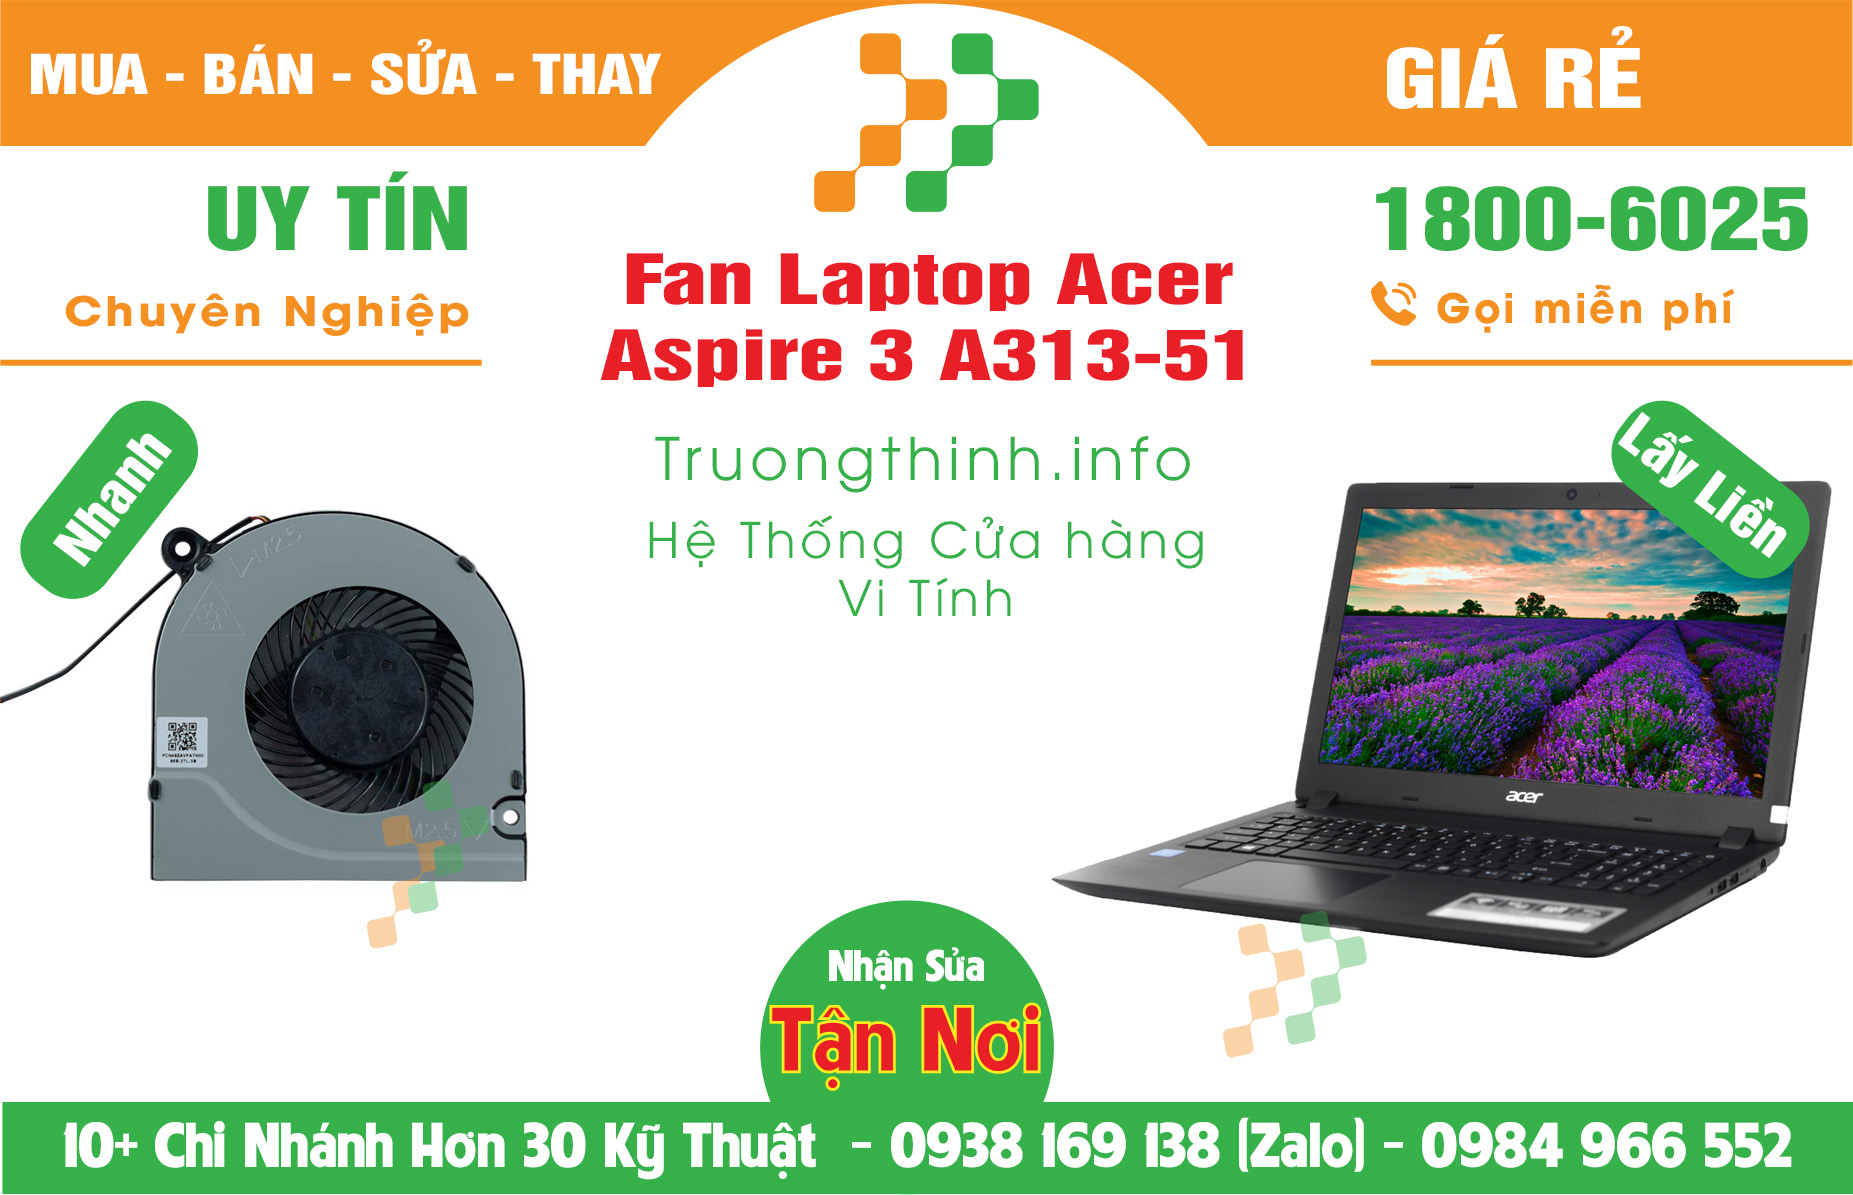 Mua Bán Vỏ Laptop Acer Aspire 3 A313-51 Giá Rẻ | Máy Tính Trường Thịnh Giá Rẻ